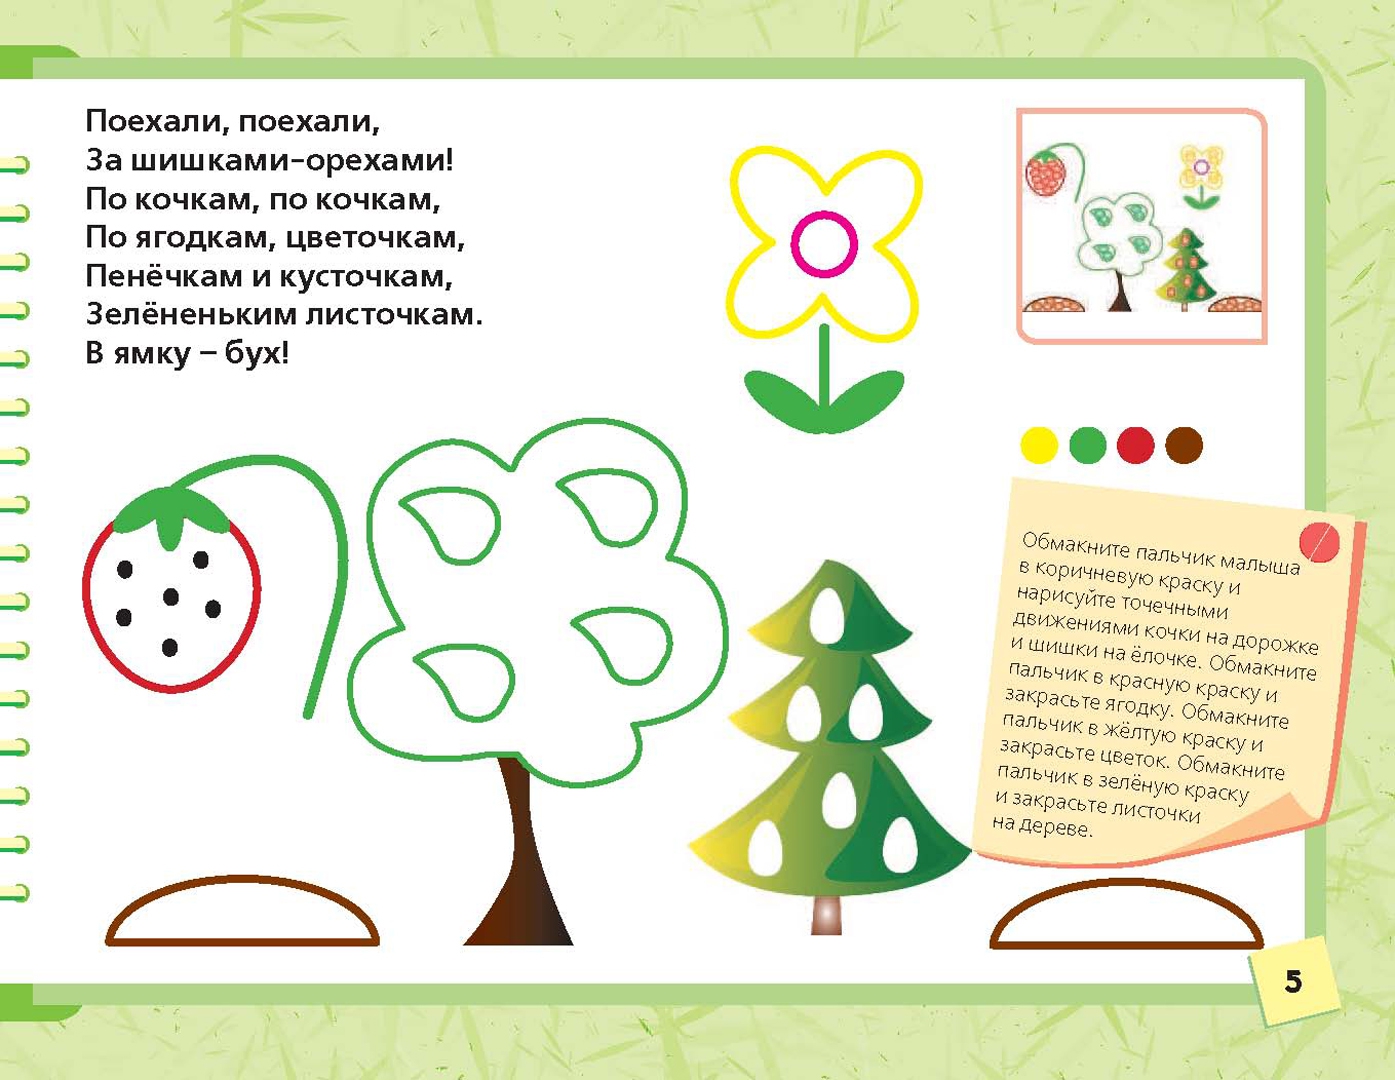 Иллюстрация 5 из 25 для Рисуем пальчиками - Жукова, Леонова | Лабиринт - книги. Источник: Лабиринт